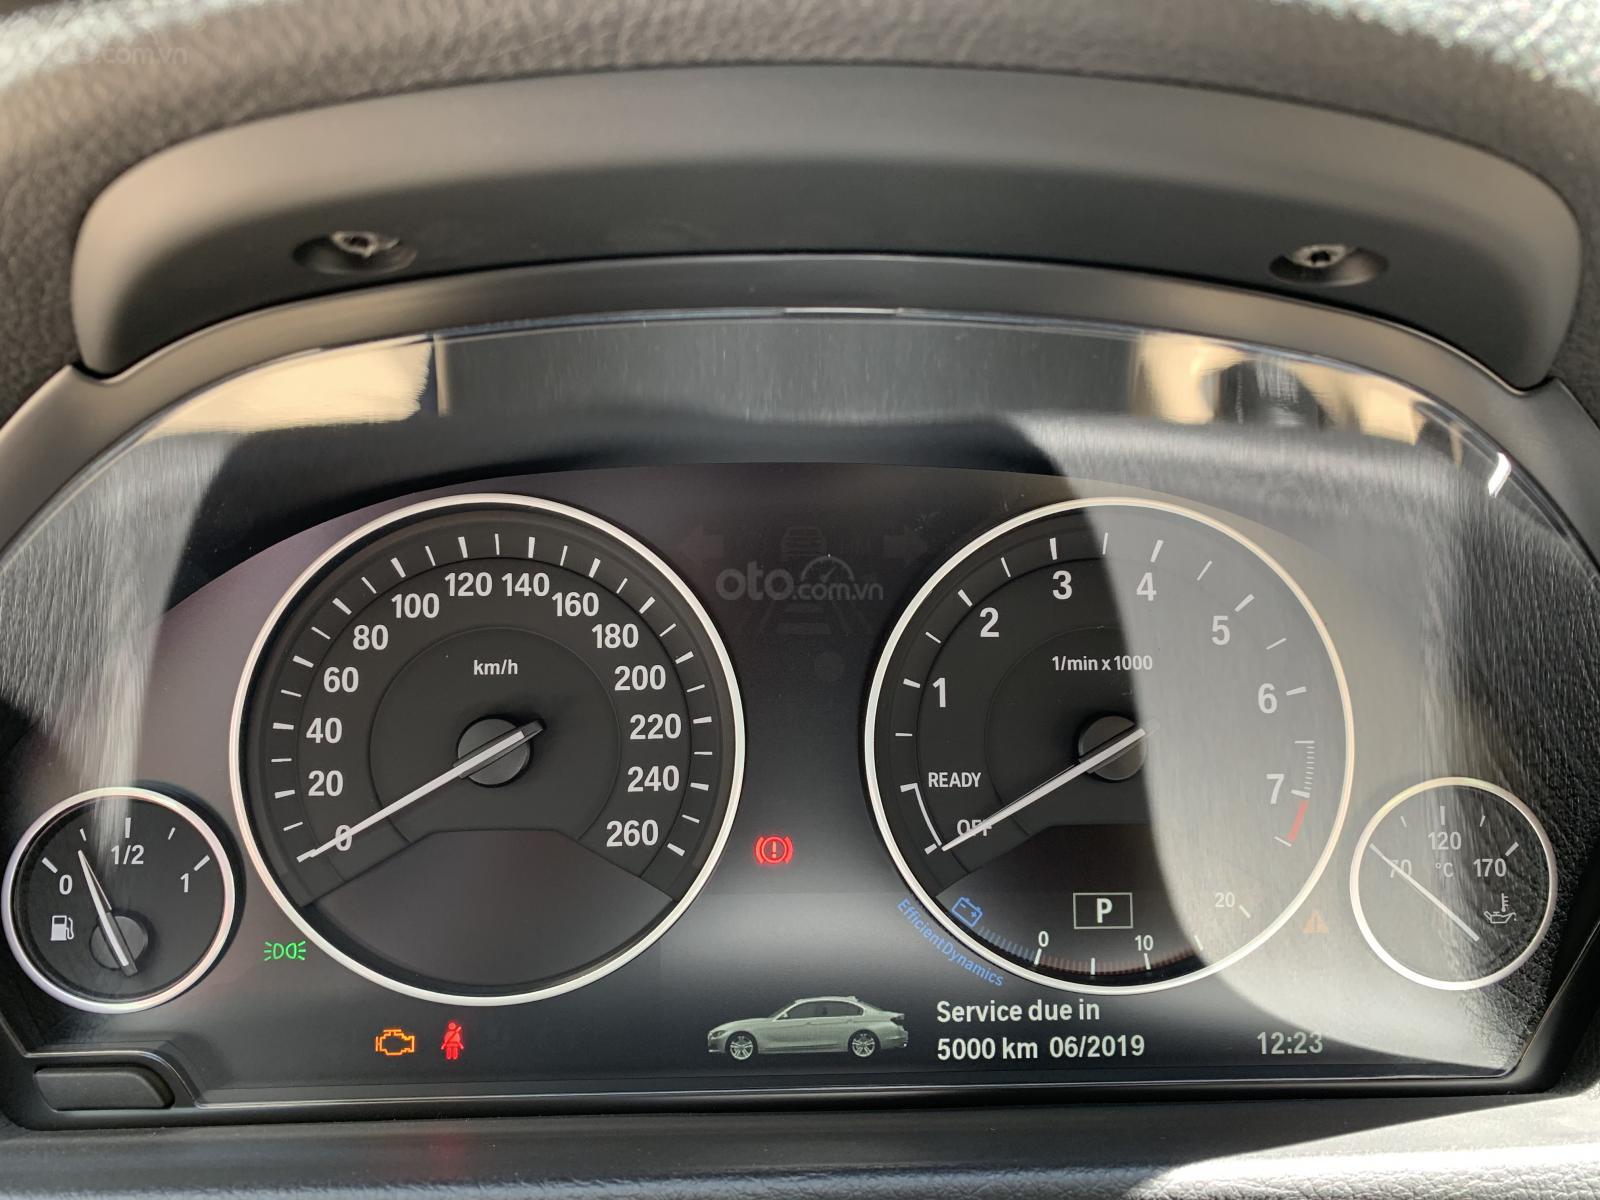 Cụm đồng hồ xe BMW 320i 2019.